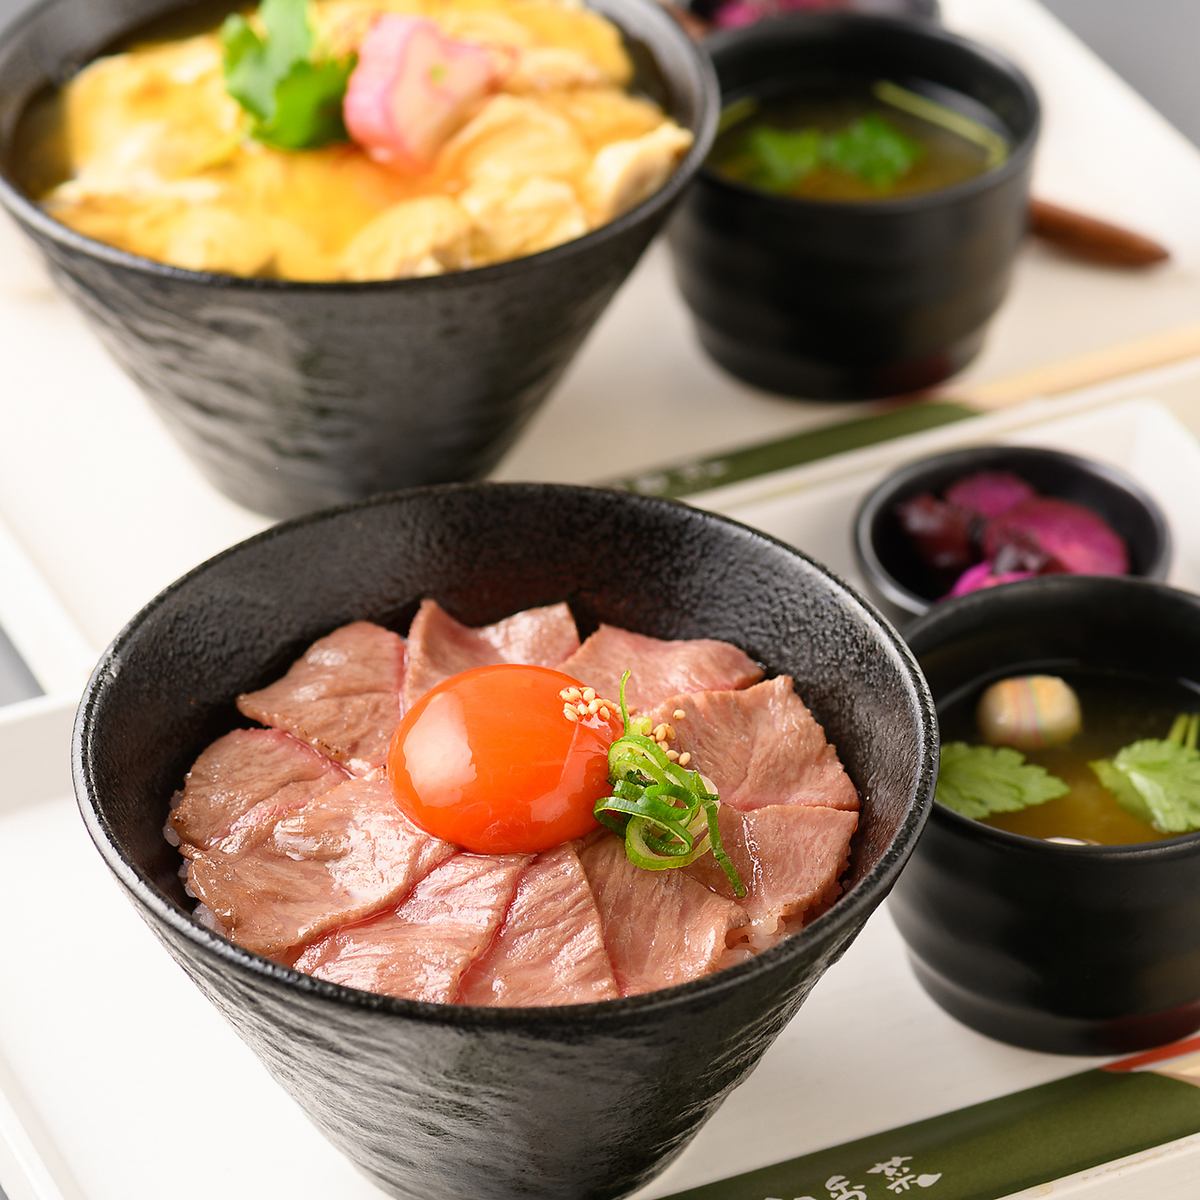 我们提供由京都著名烤肉店主厨监制的高品质肉类。